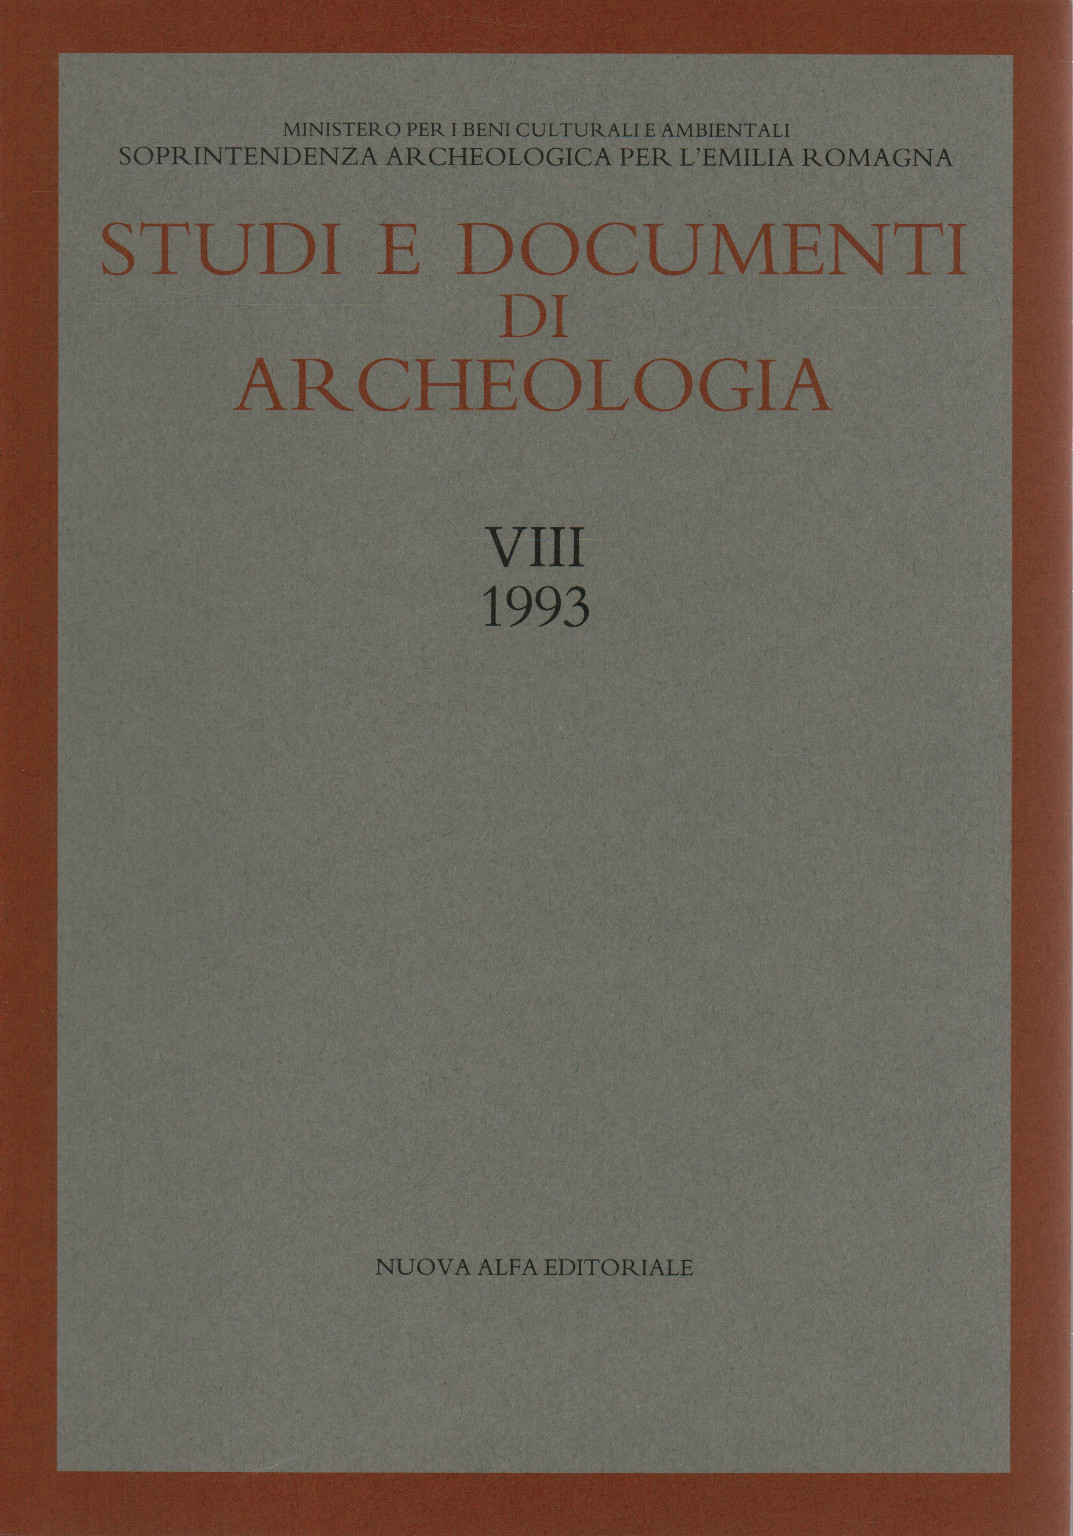 Studi e documenti di archeologia. Vol. VIII (1993), s.a.